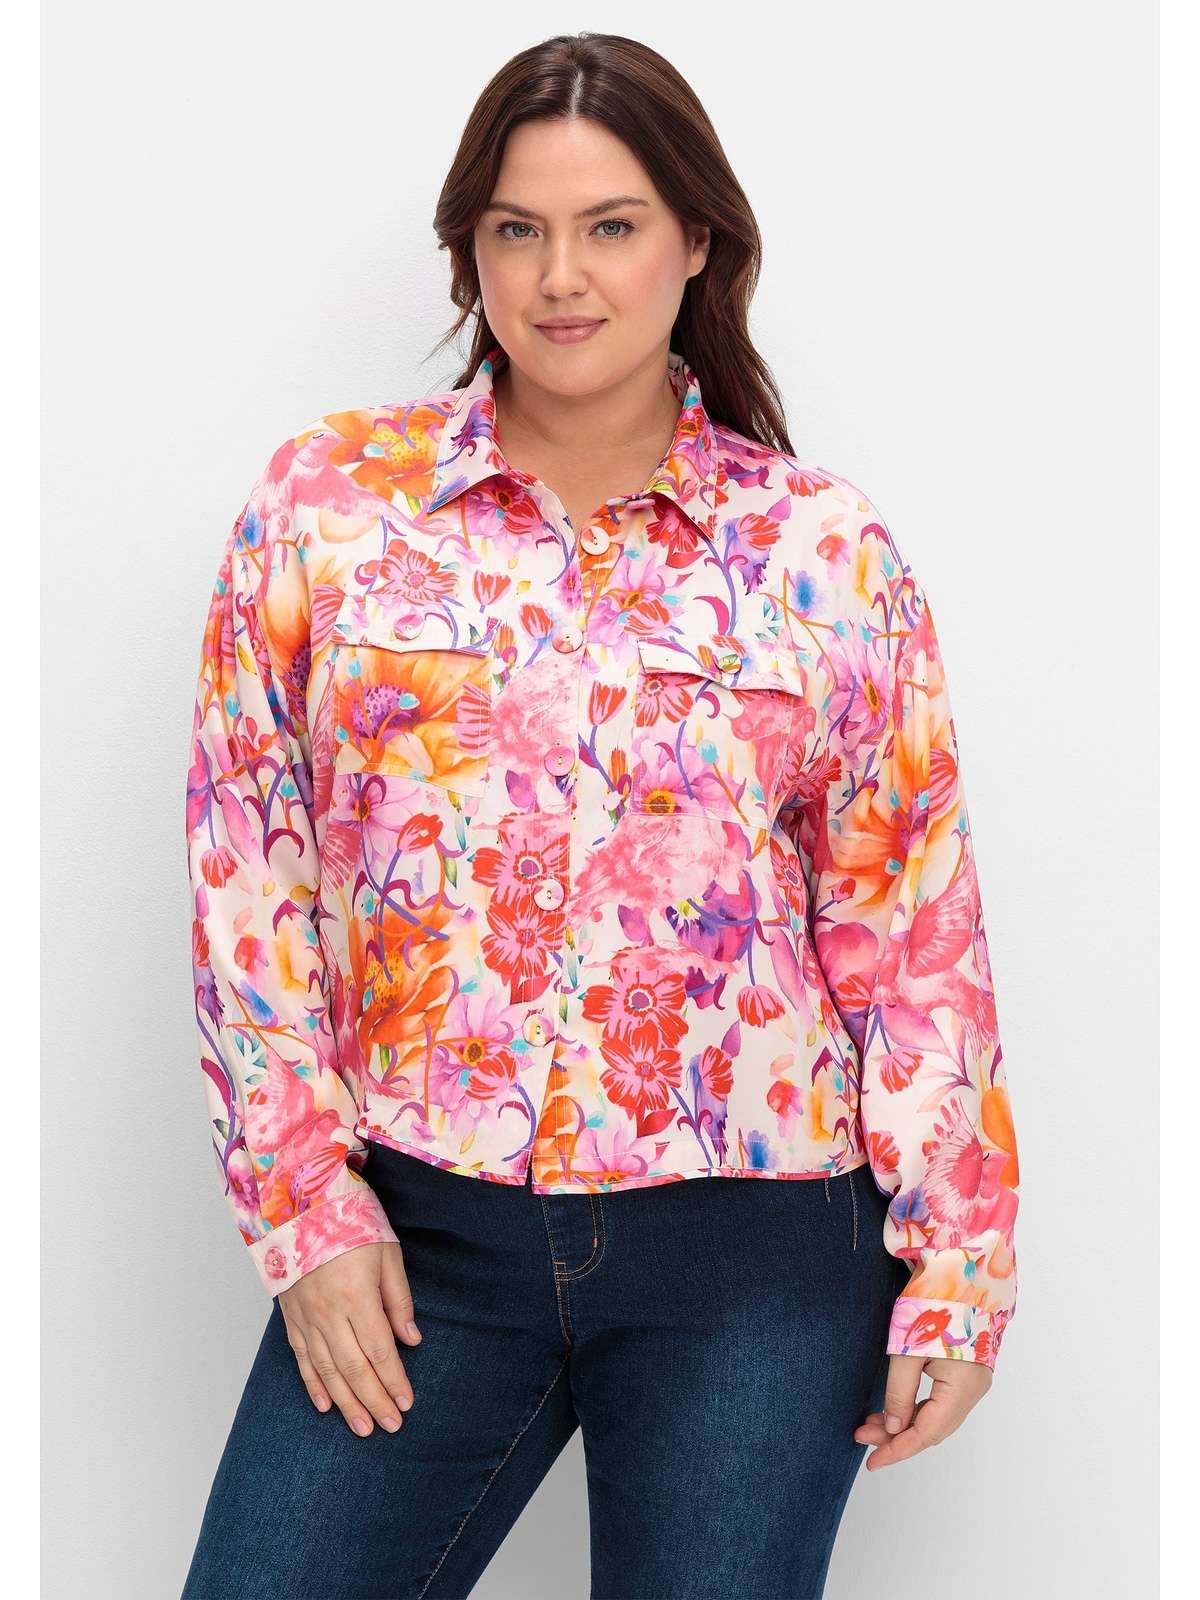 Блузка-рубашка с разноцветным цветочным принтом